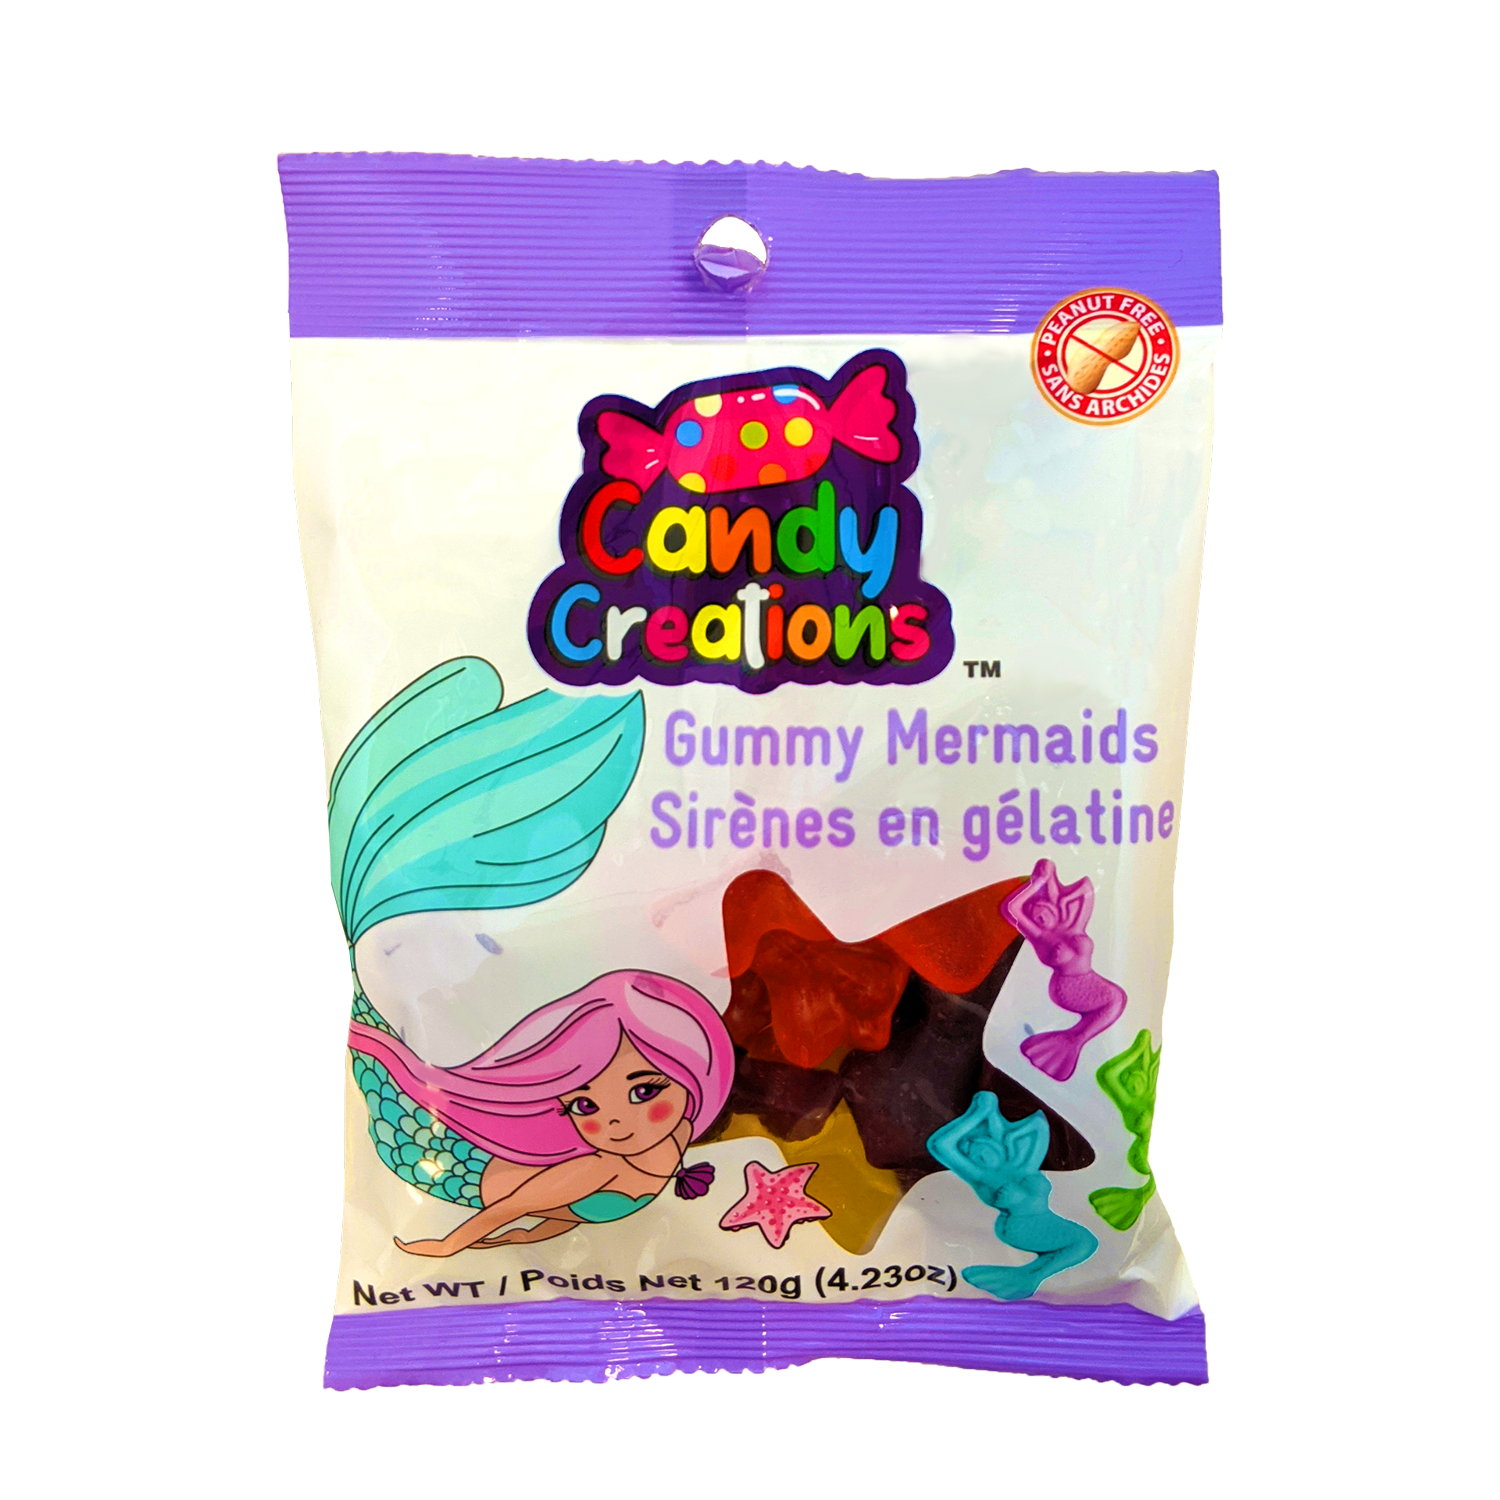 https://exclusivebrands.ca/wp-content/uploads/2021/02/prod-Gummy_mermaids.png